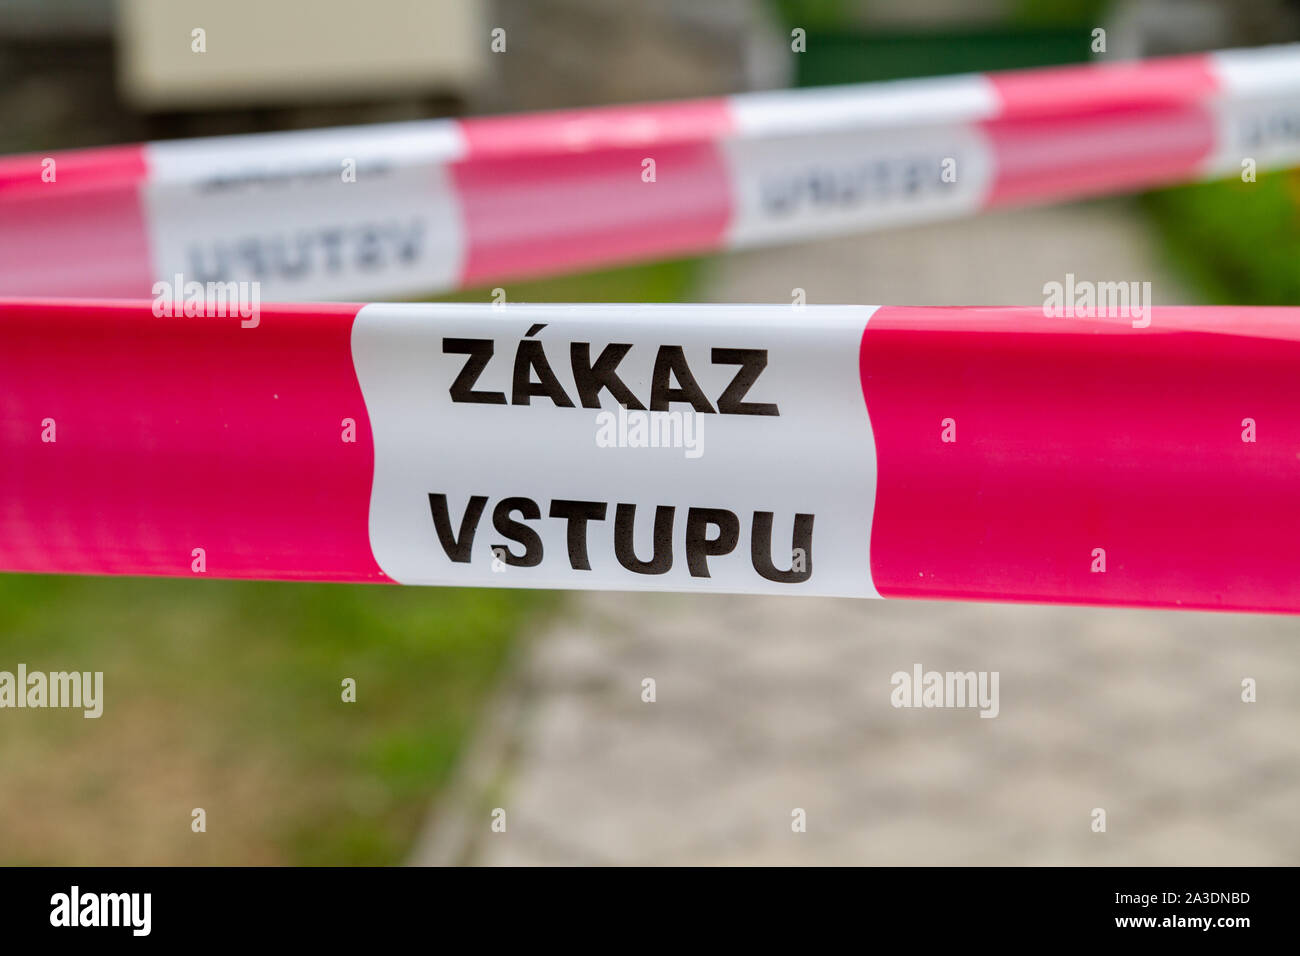 Ein Cordon mit den Worten "Zakaz vstupu", die in der Slowakischen bedeuten, "Kein Eintrag" oder "Eintritt verboten" Stockfoto